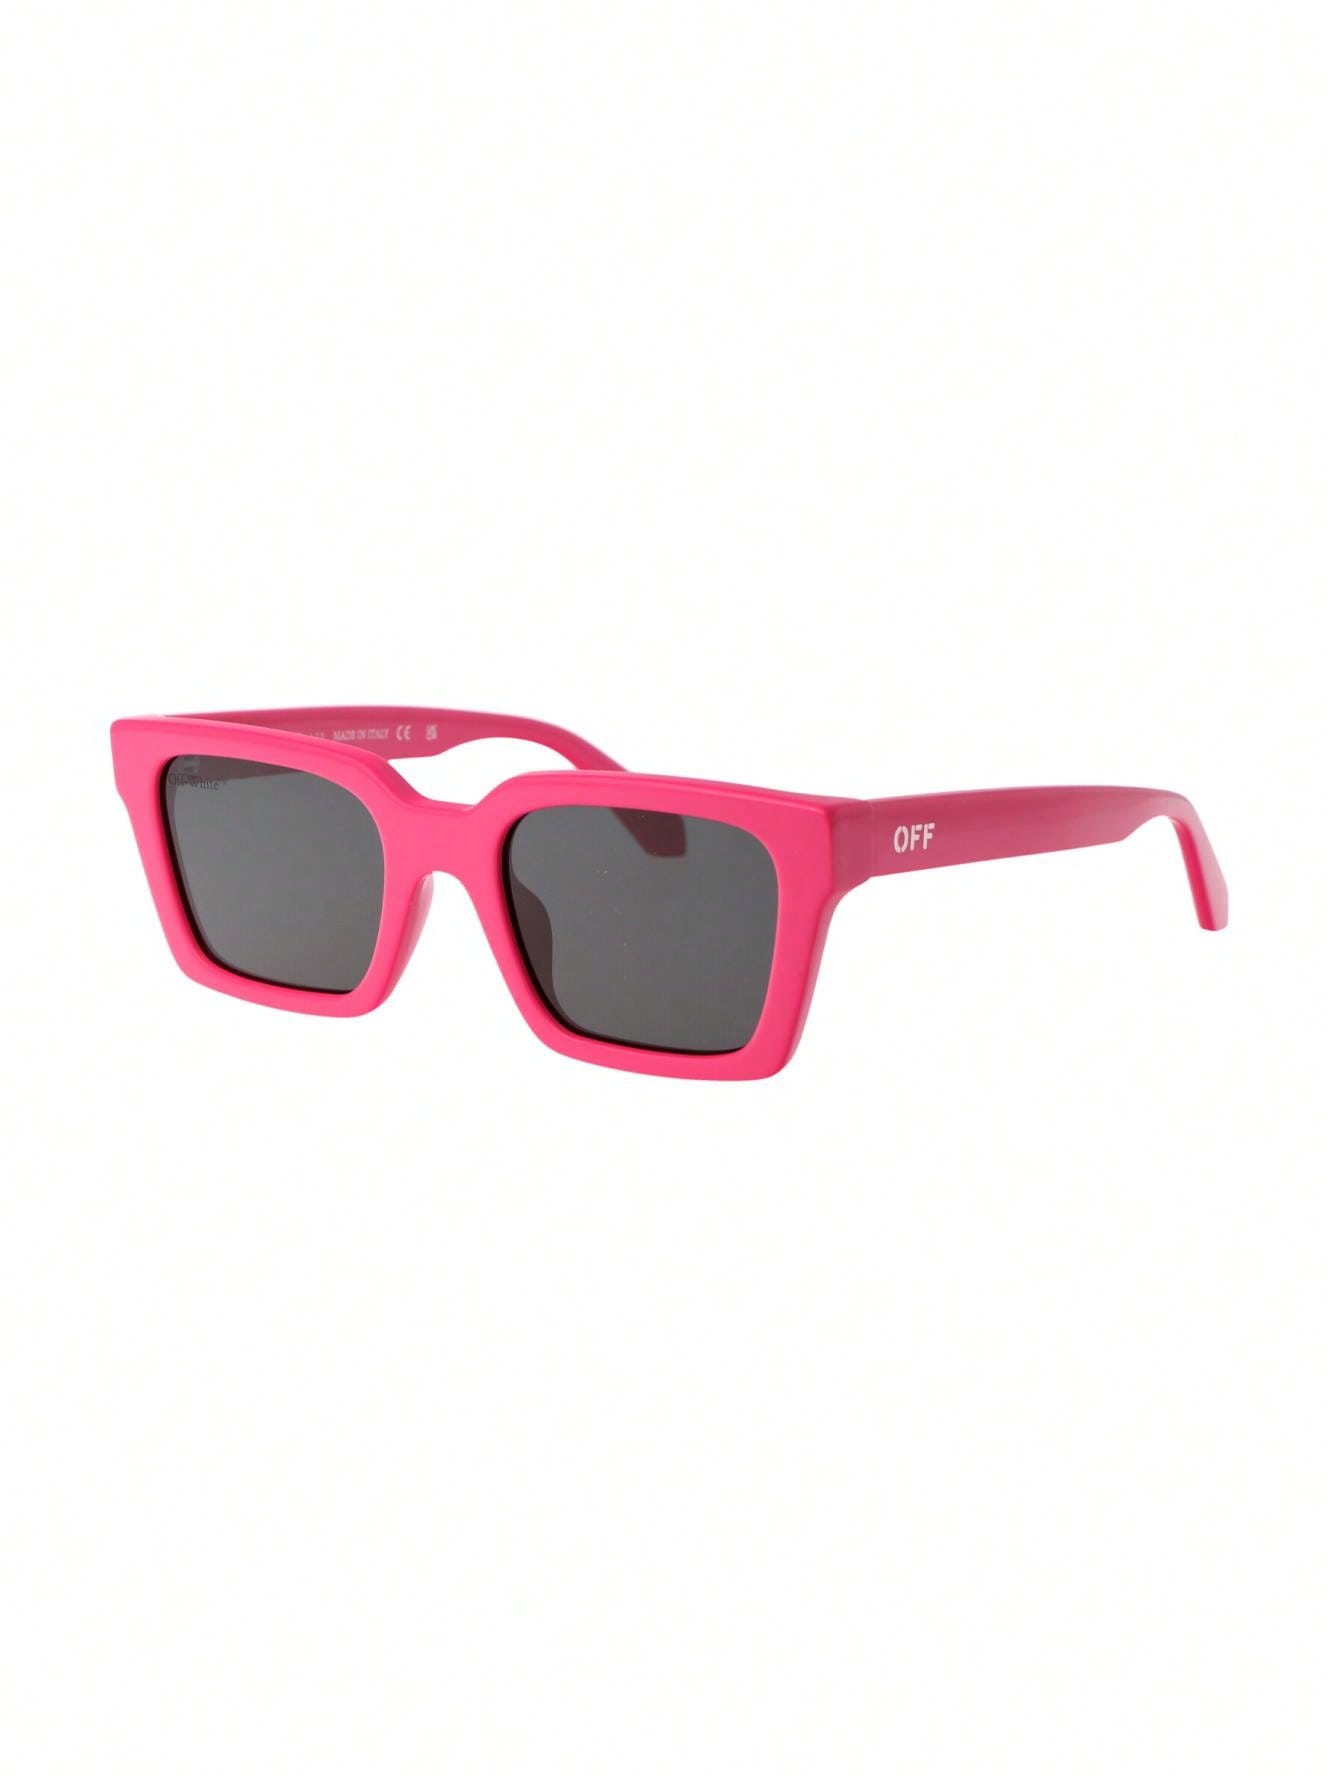 Мужские солнцезащитные очки Off-White РОЗОВЫЕ OERI086F23PLA0013207, розовый зеленые солнцезащитные очки kimball off white